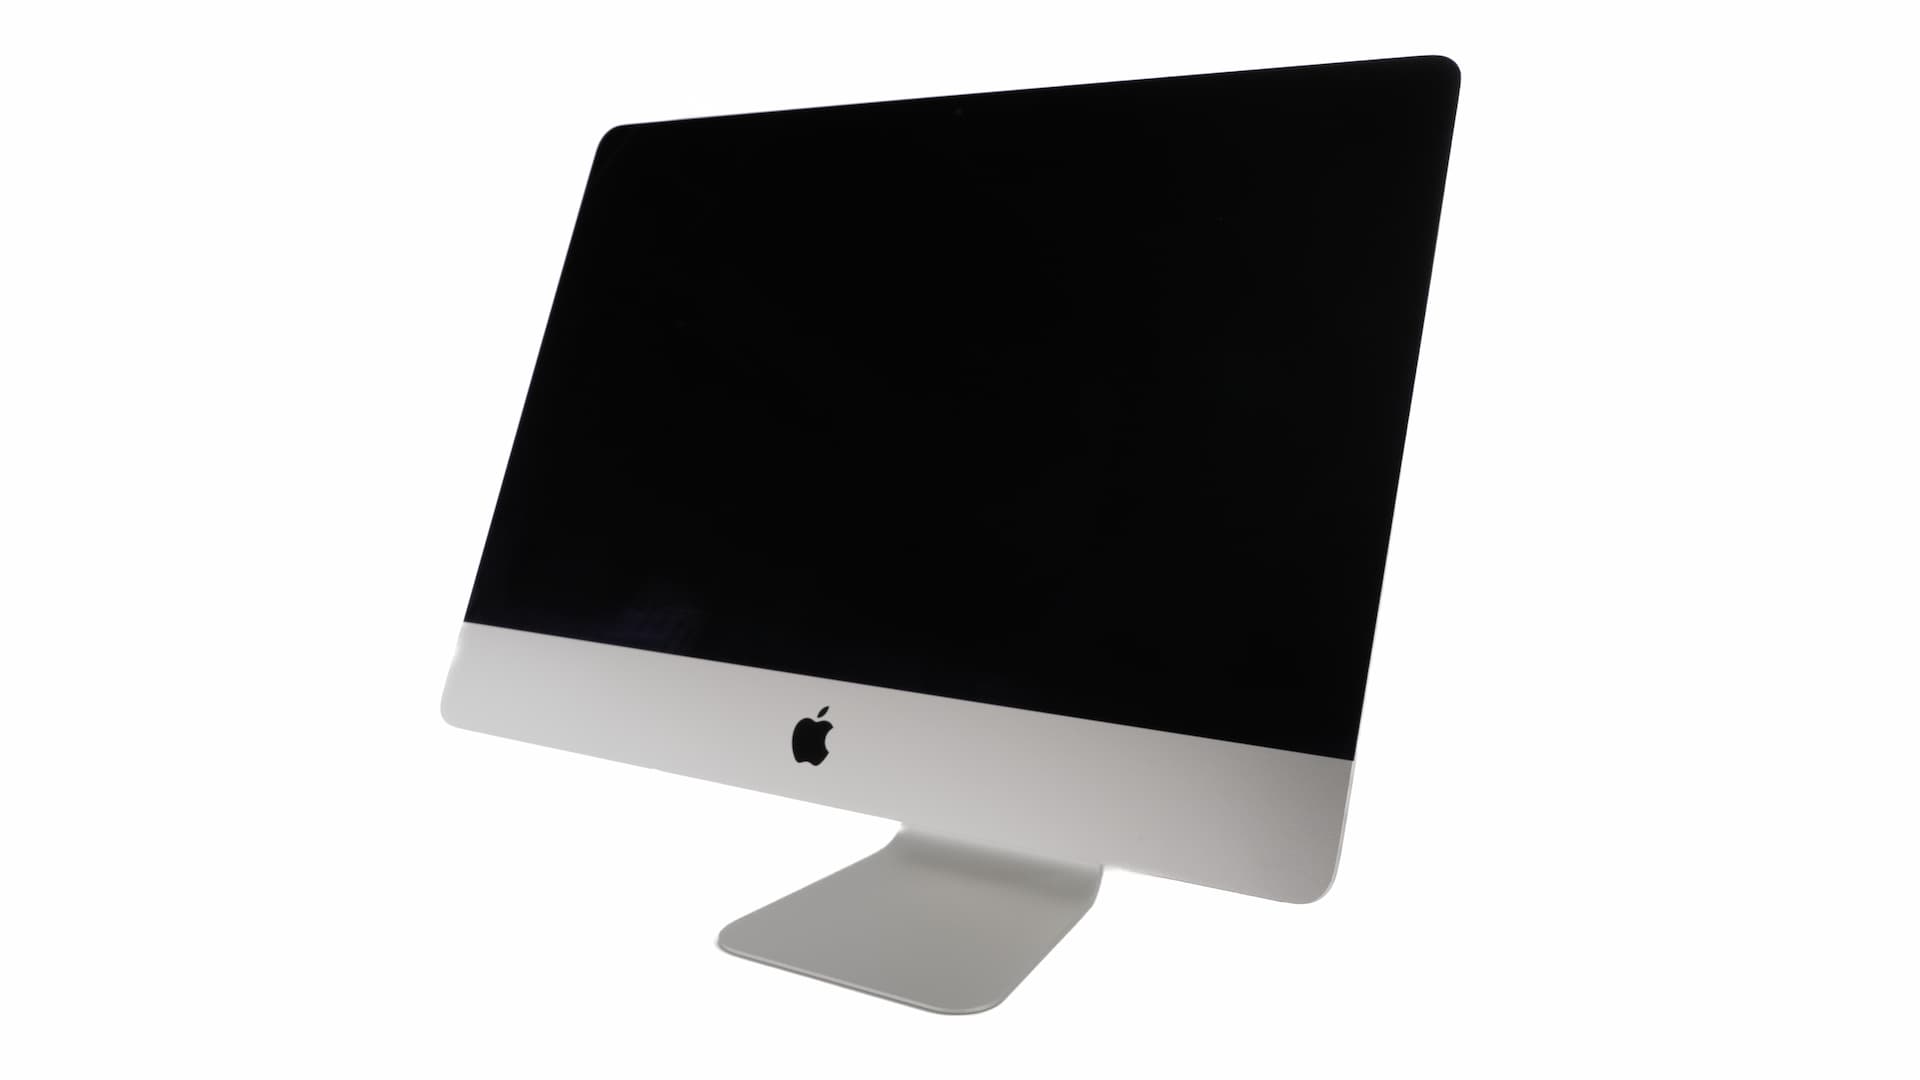 iMac-standard-1-1.jpg Brugte computere